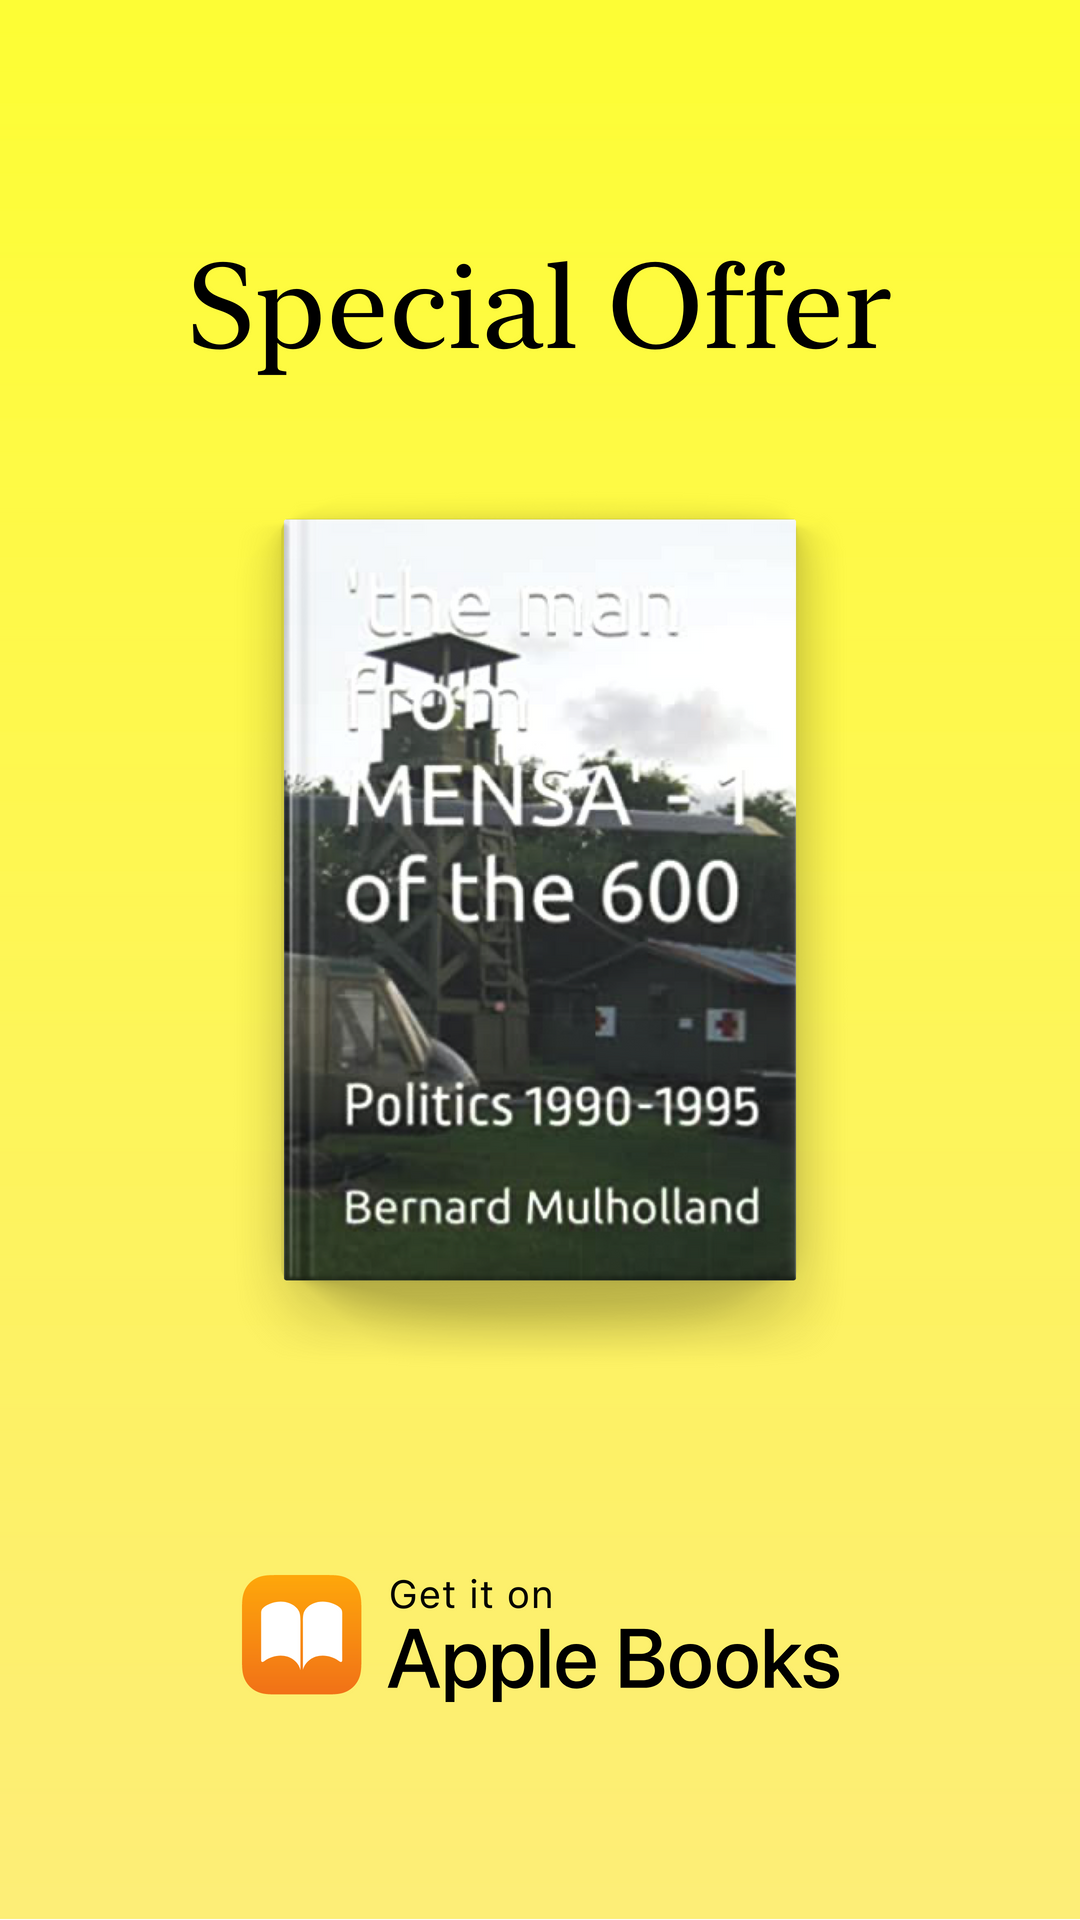 Der Mann aus MENSA – 1 von 600: Politik 1990-1995